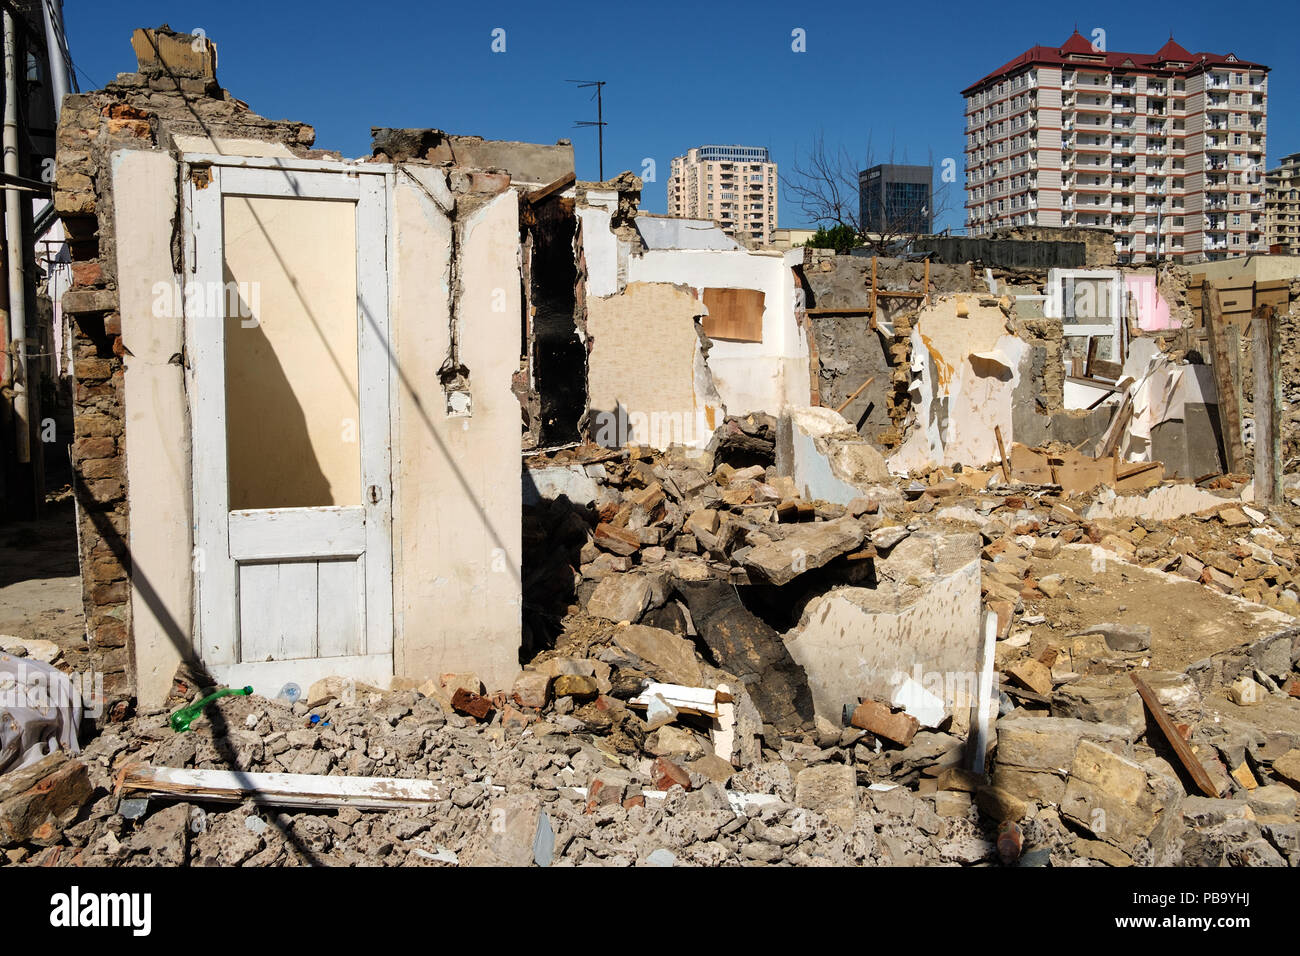 Demolición de un antiguo barrio residencial en el centro de la ciudad de Bakú, Azerbaiyán para hacer espacio para la construcción de nuevos bulidings. Foto de stock